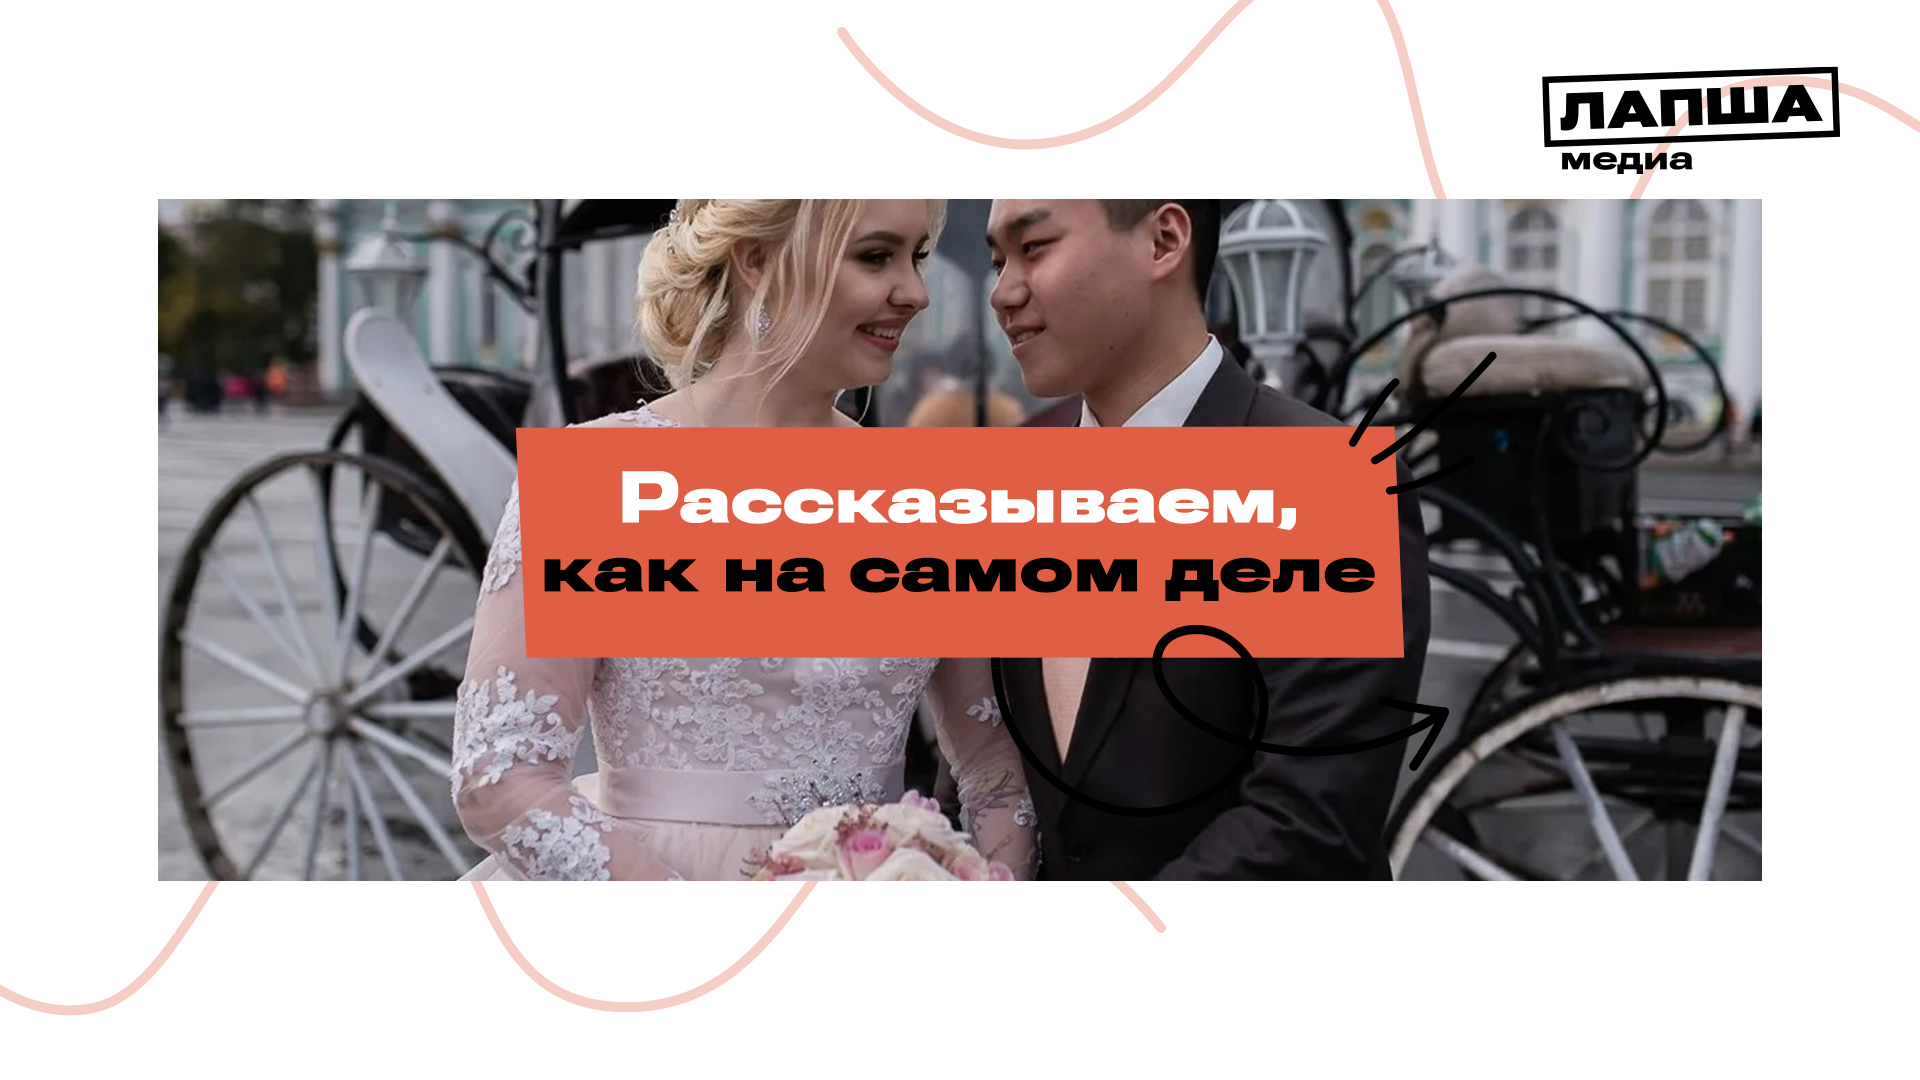 ФЕЙК: Пропагандировать смешанные браки между народами России и Китая